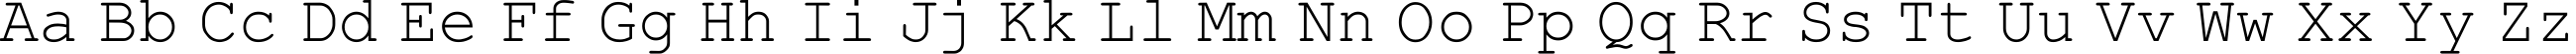 Пример написания английского алфавита шрифтом HellasCour